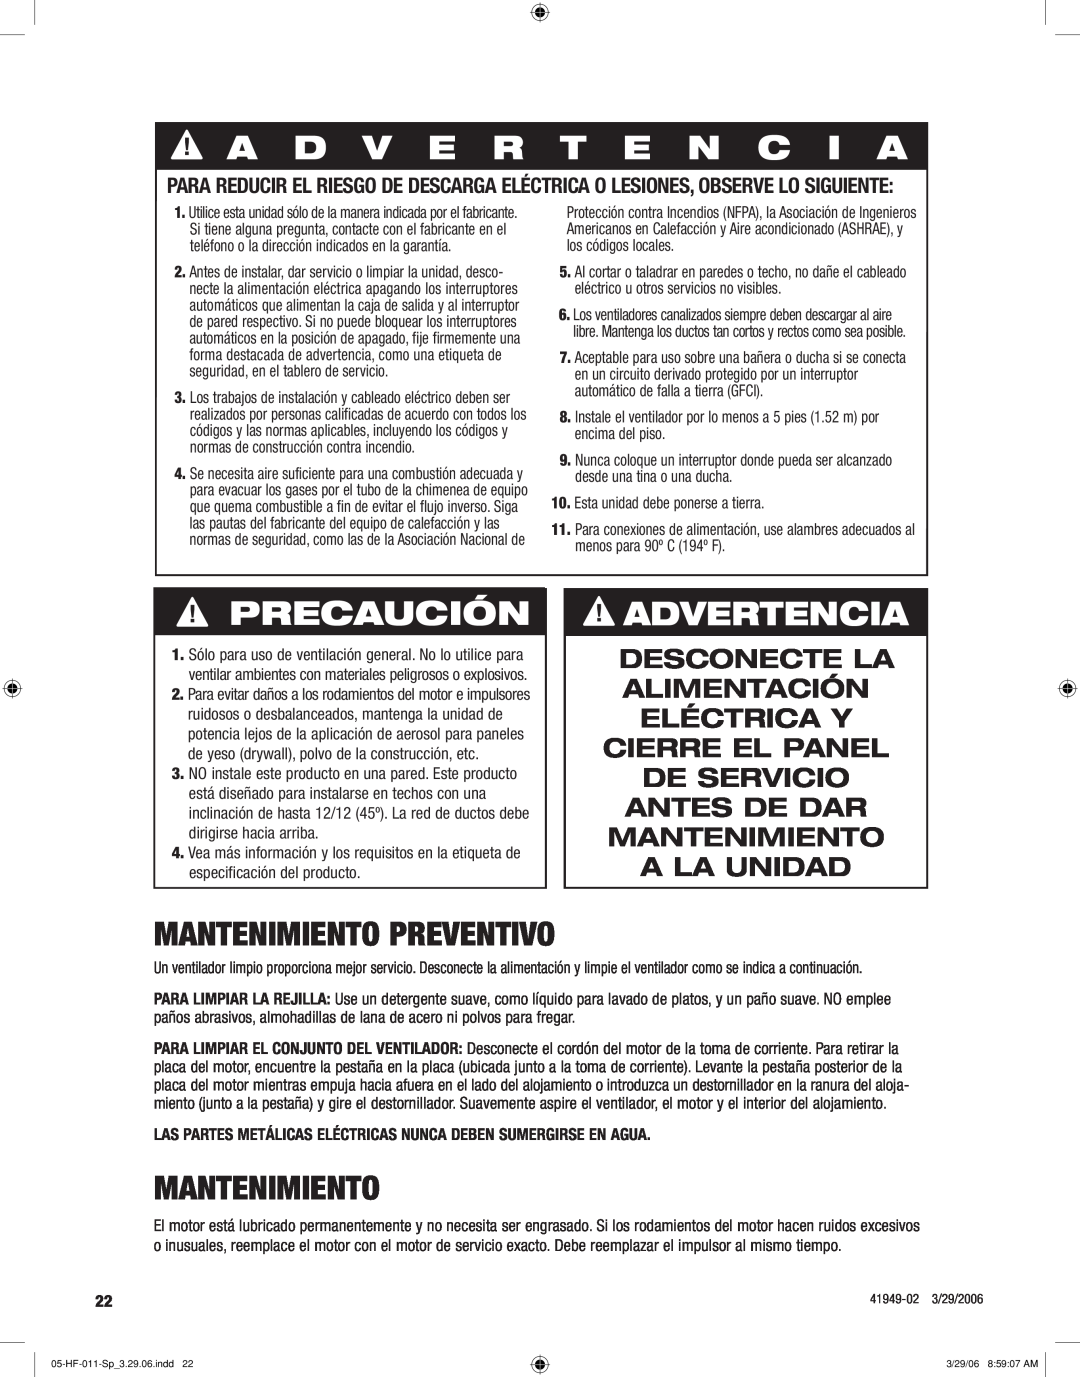 Hunter Fan 83001 manual A D V E R T E N C I A, Precaución, Advertencia, Mantenimiento preventivo 